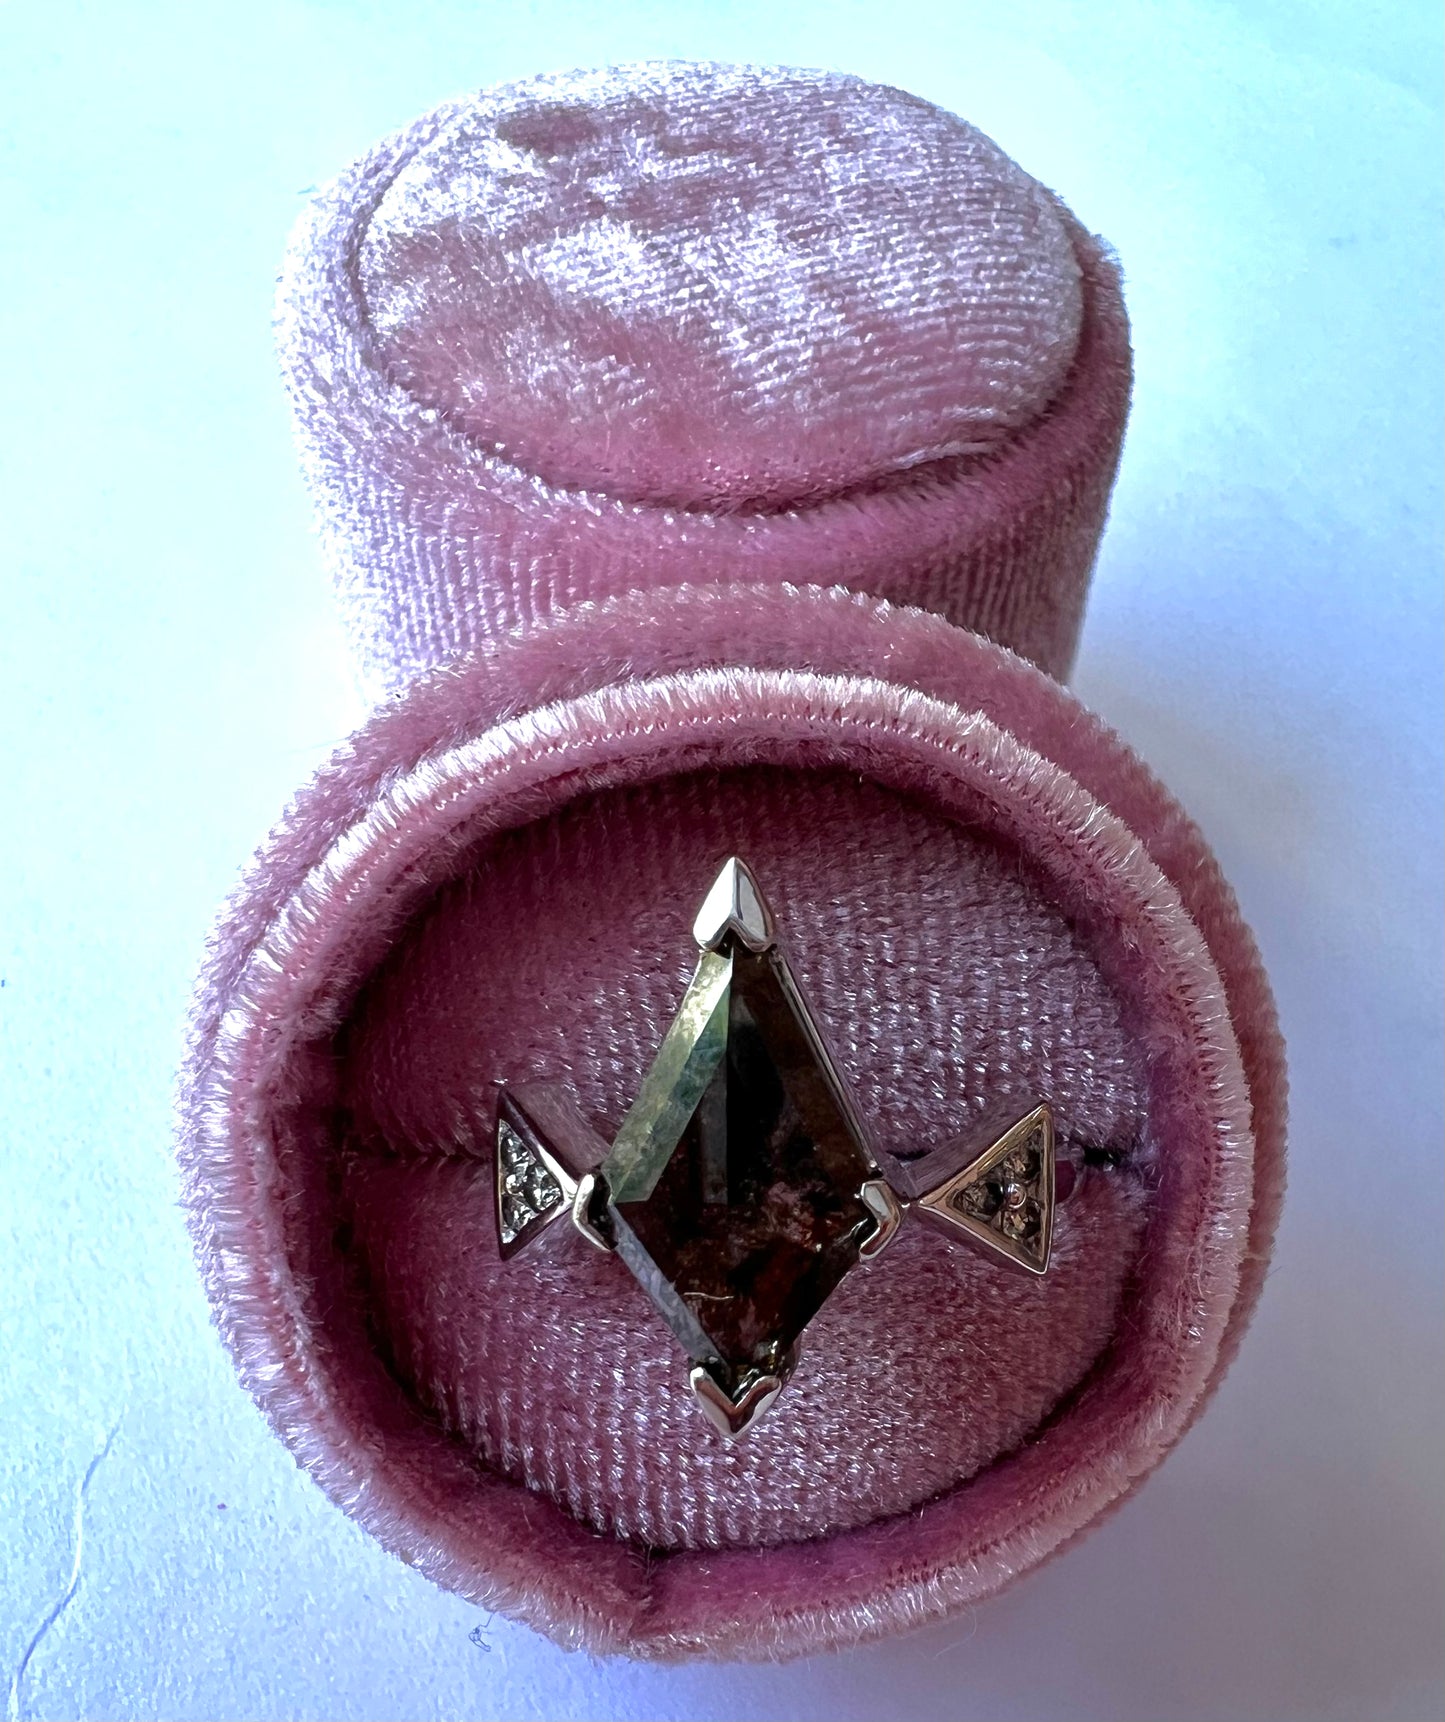 Kite Salt and Pepper Diamond Ring